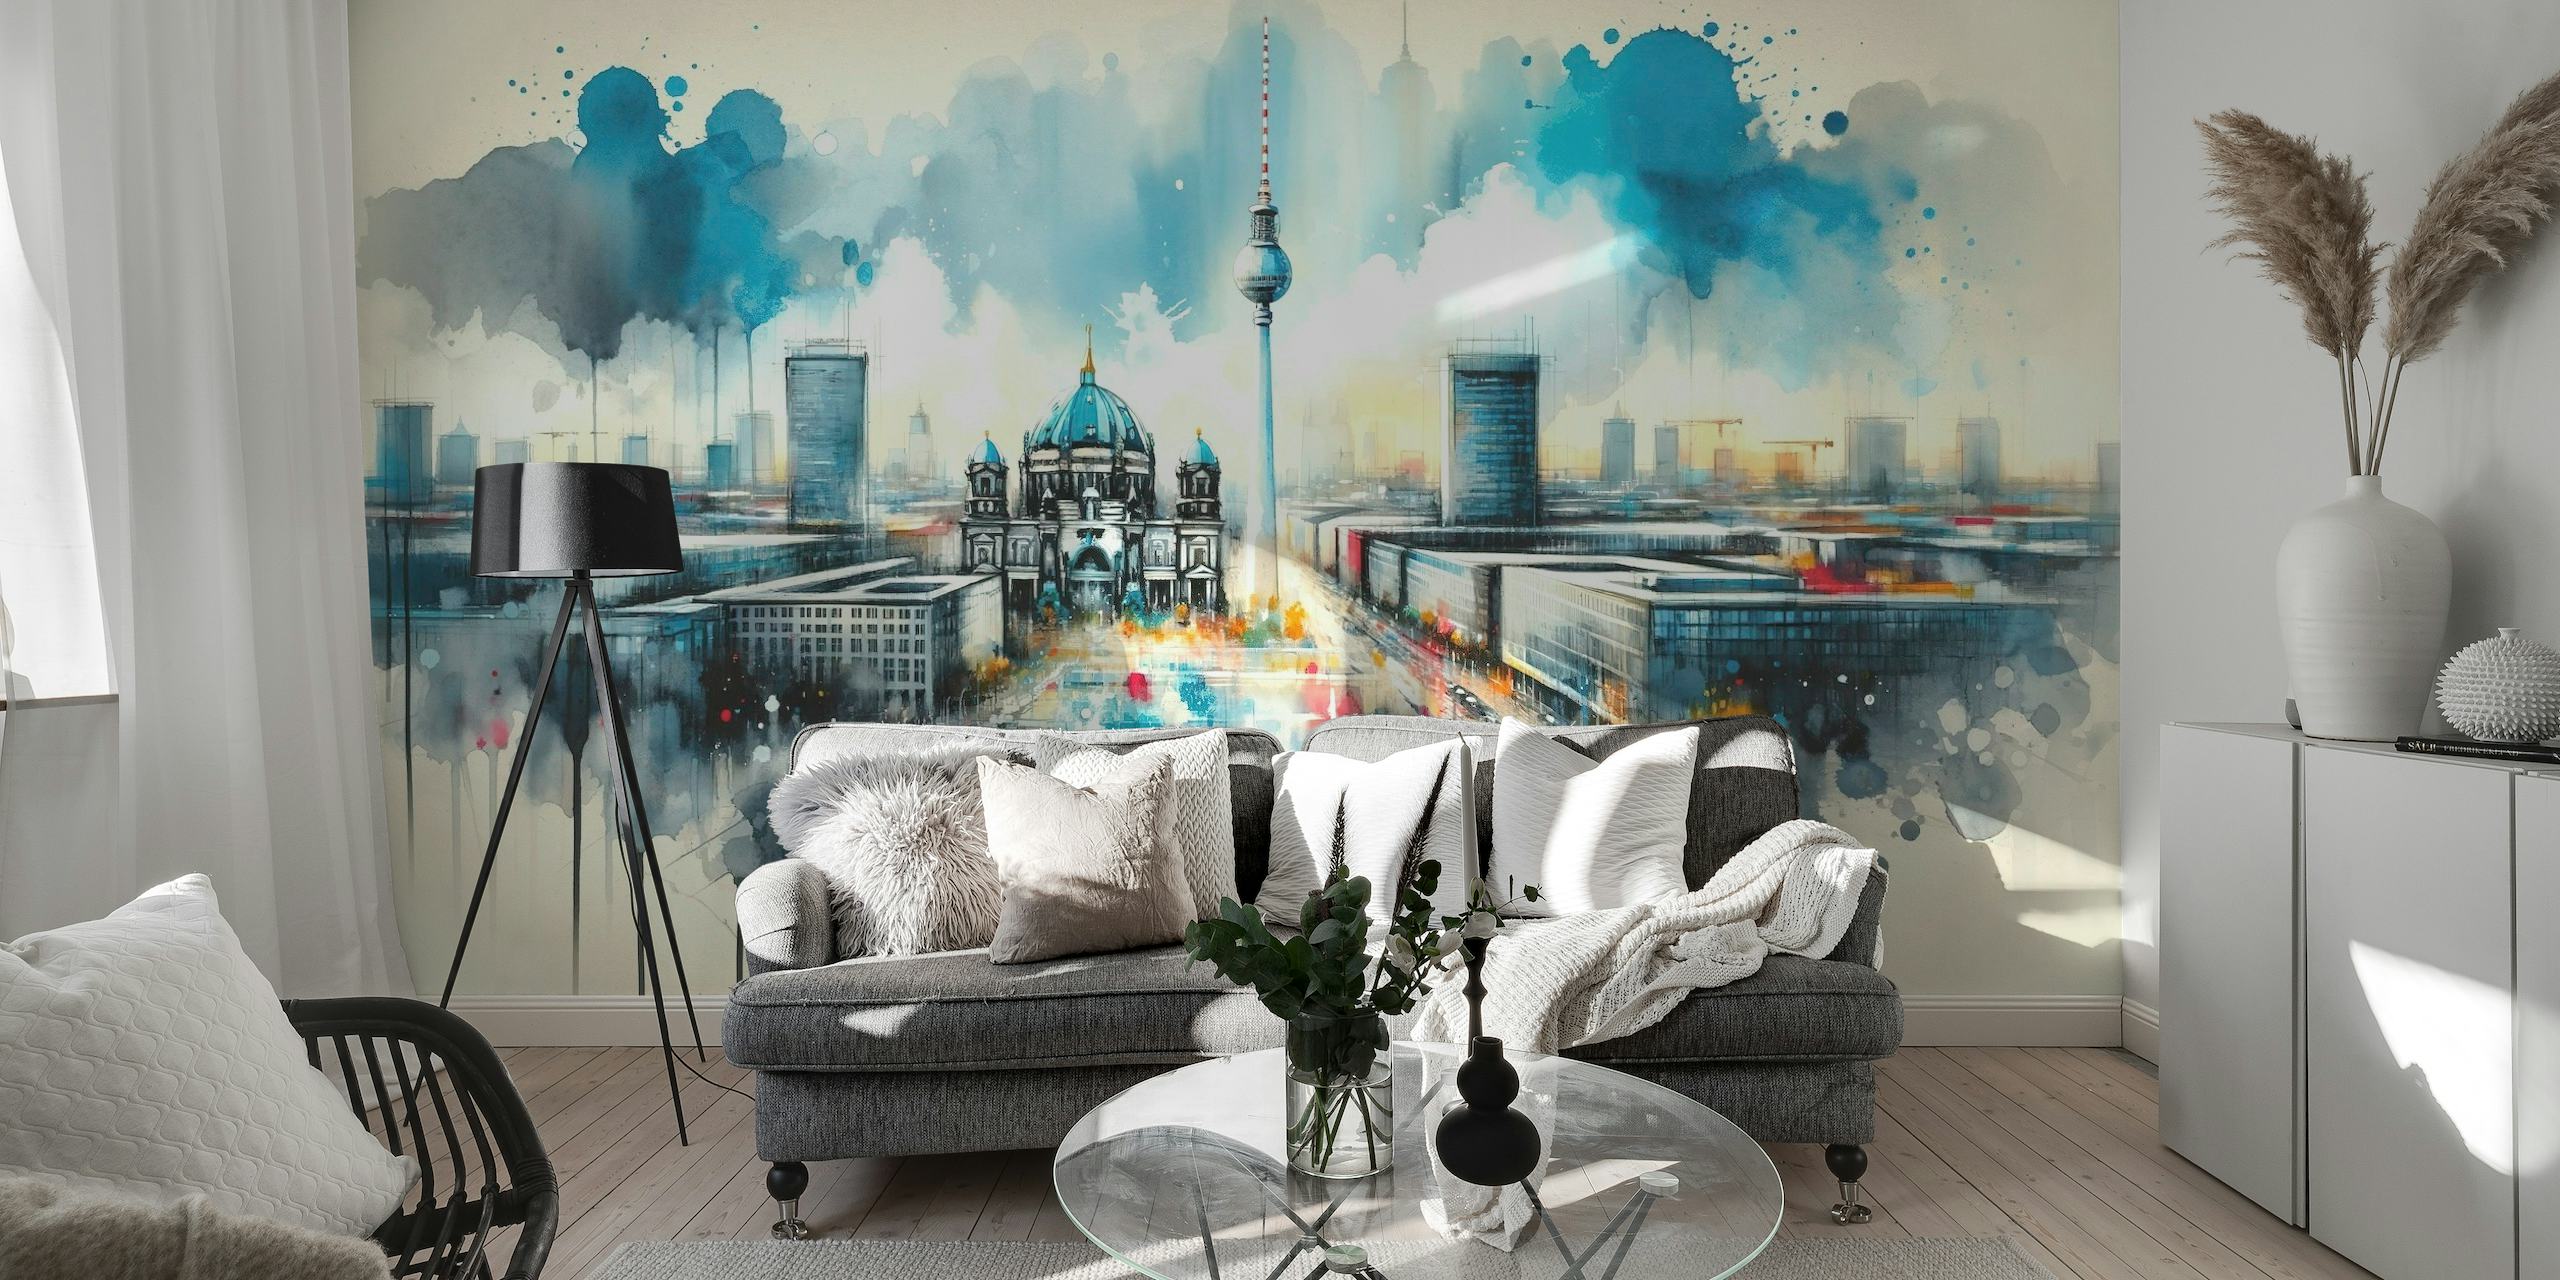 Akvarellveggmaleri av Berlins moderne arkitektur med ikoniske landemerker og en dynamisk, kunstnerisk tolkning.